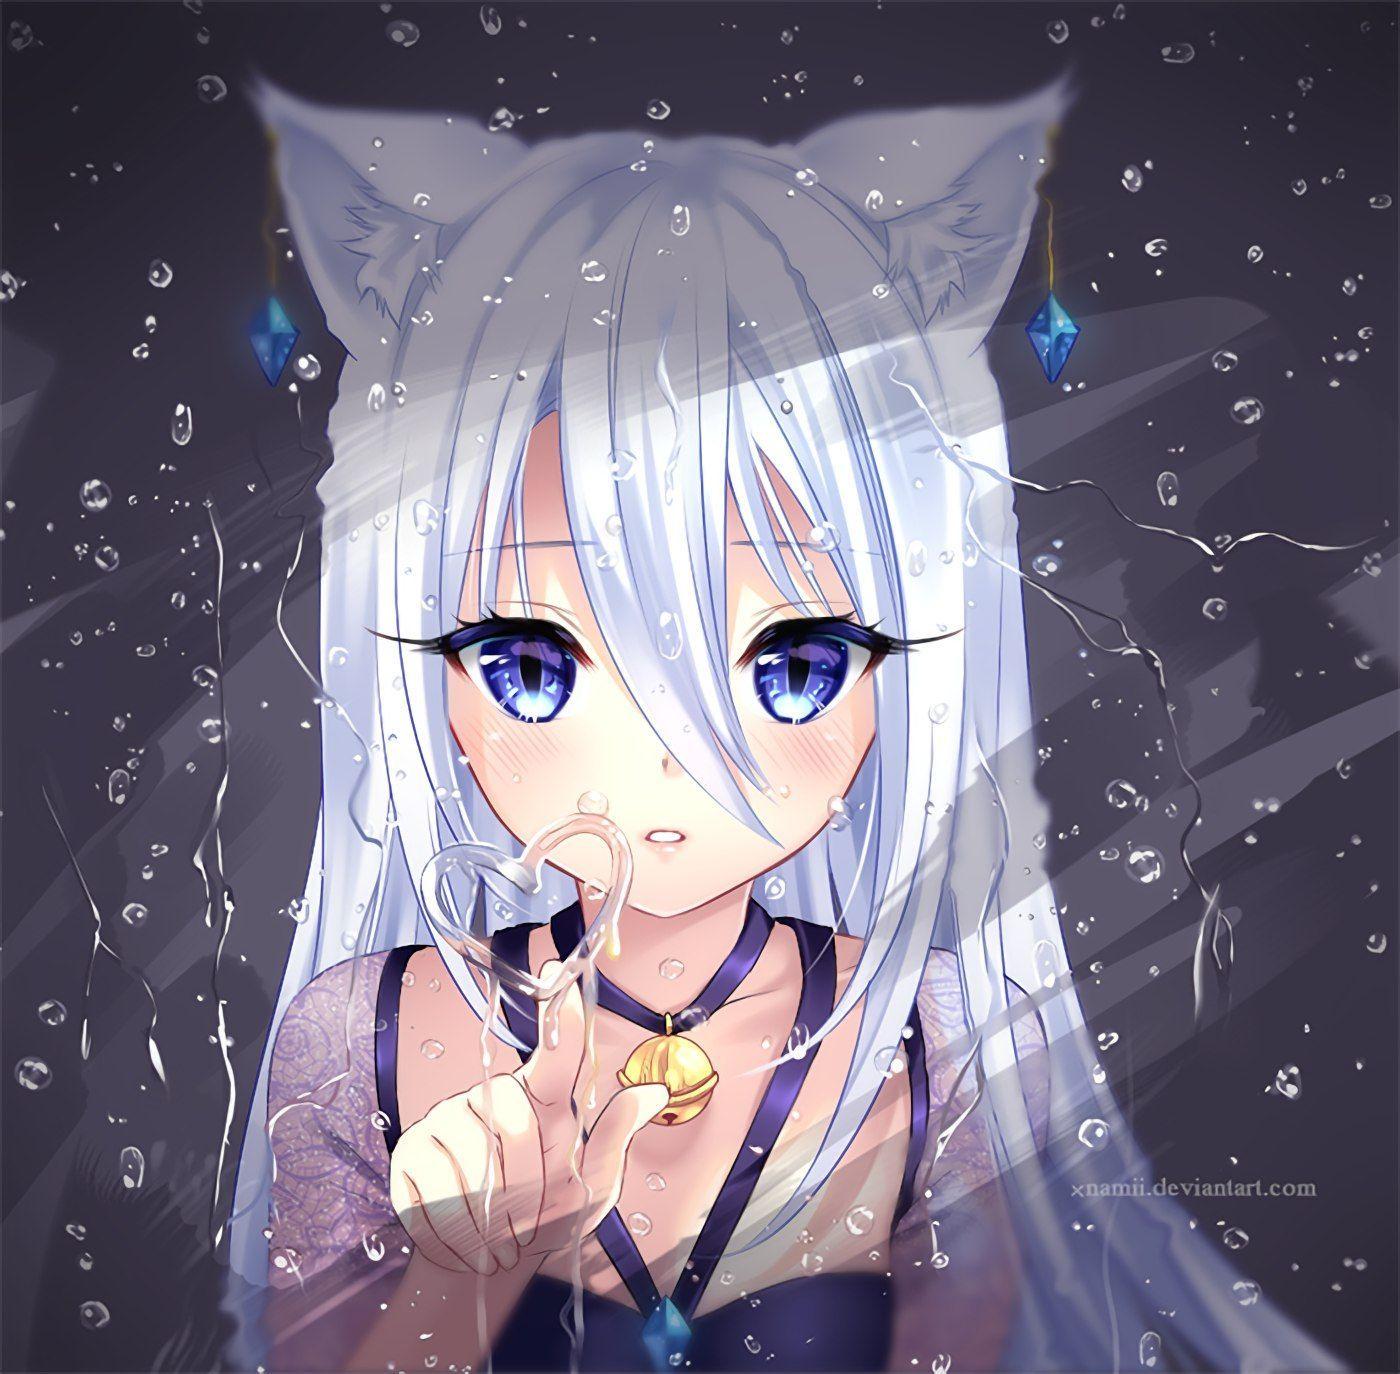 Cute Anime Wolf Girl Wallpapers - Top Những Hình Ảnh Đẹp